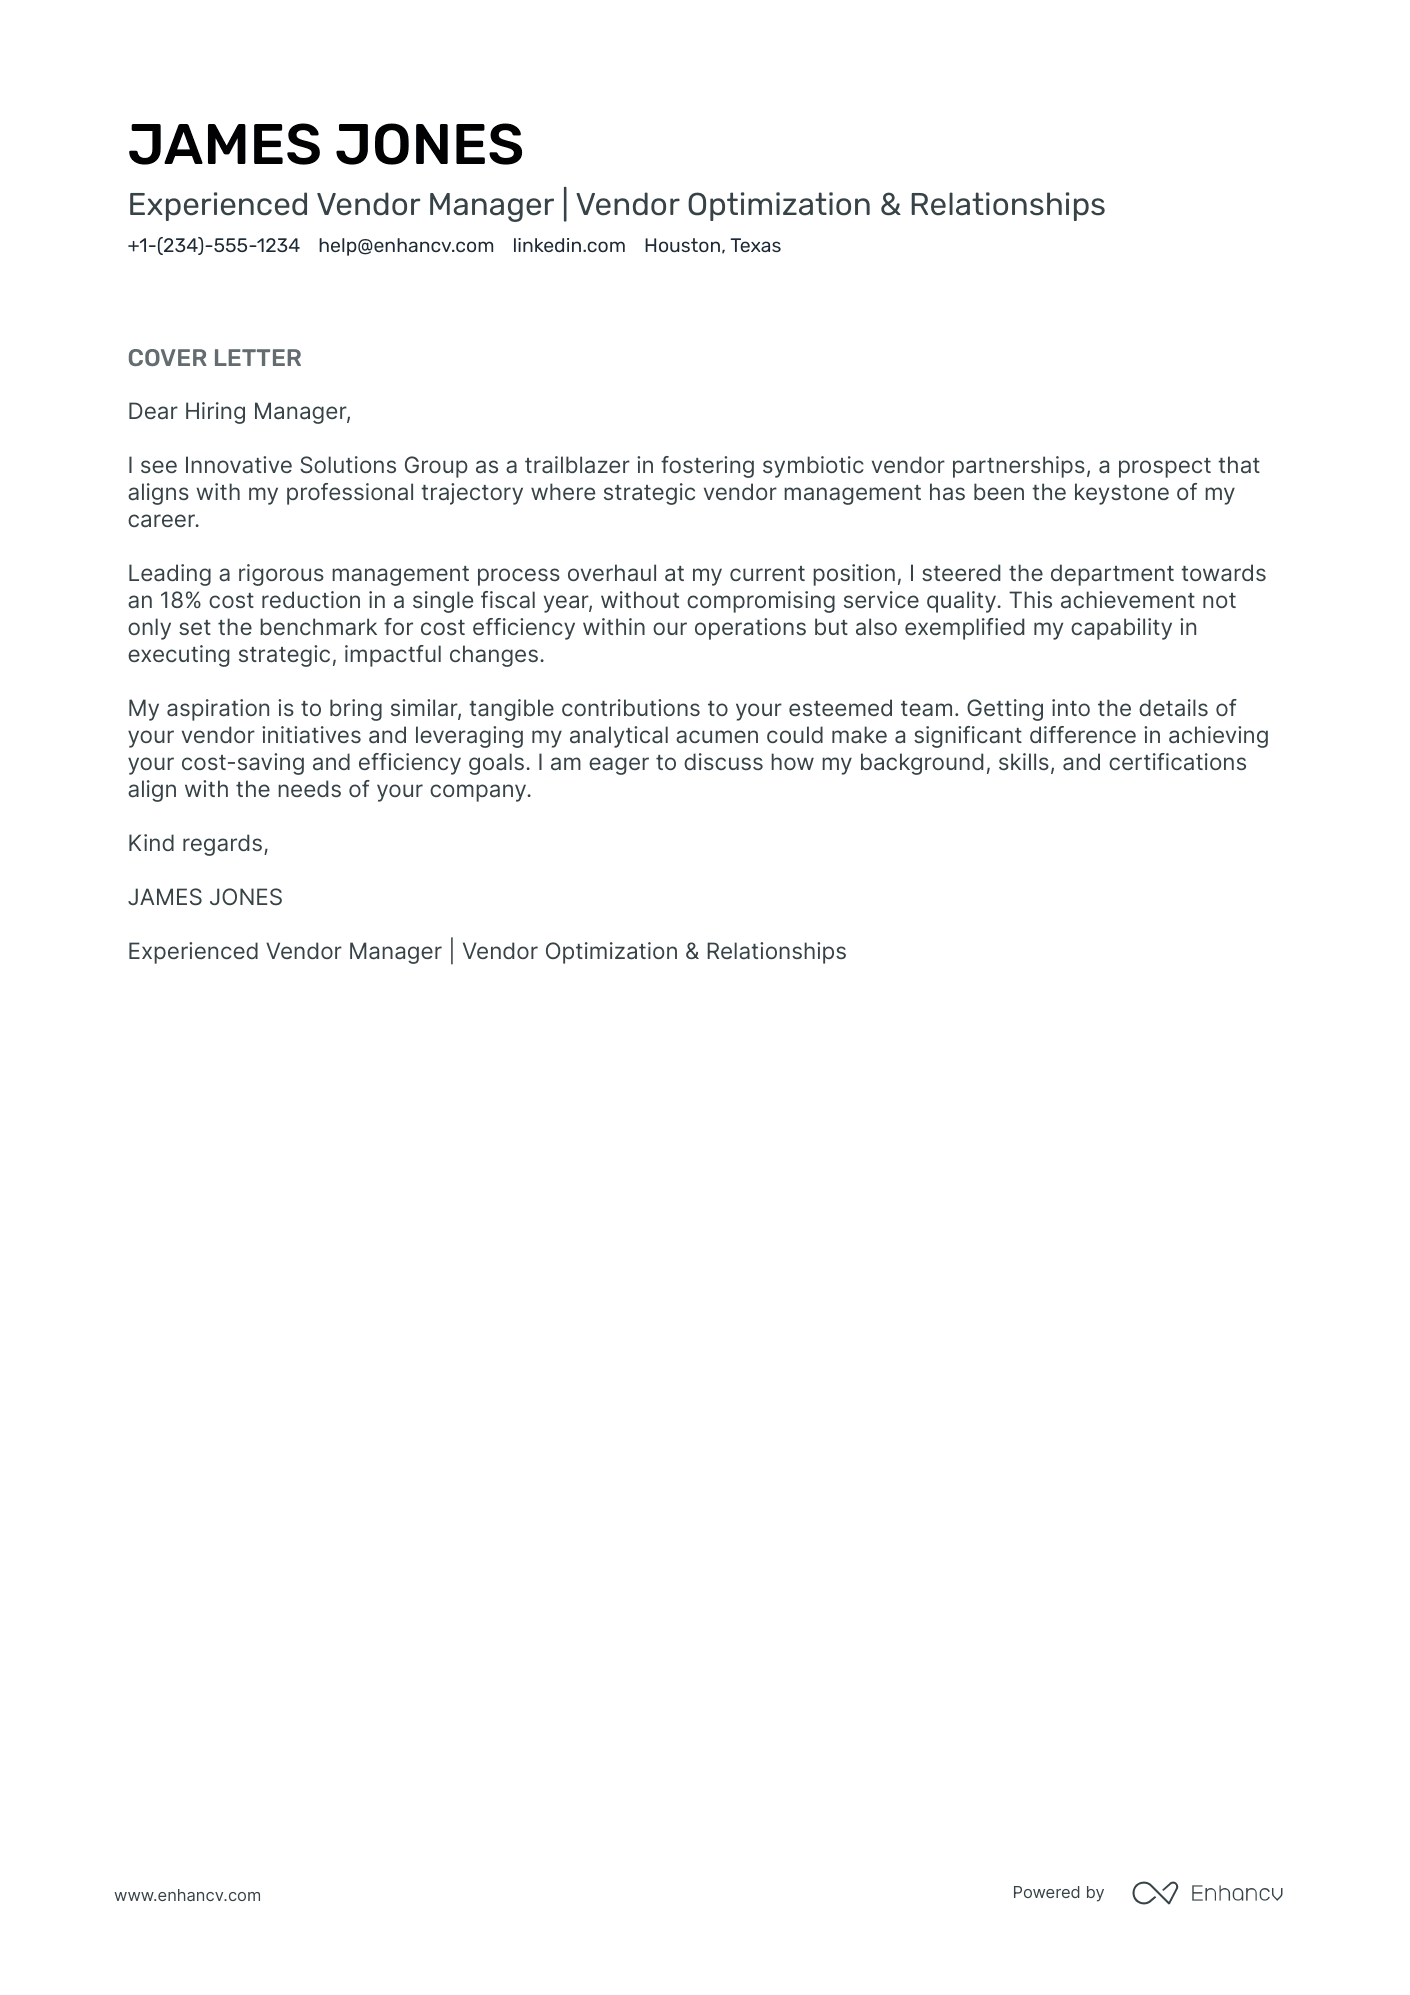 Vendor Manager cover letter